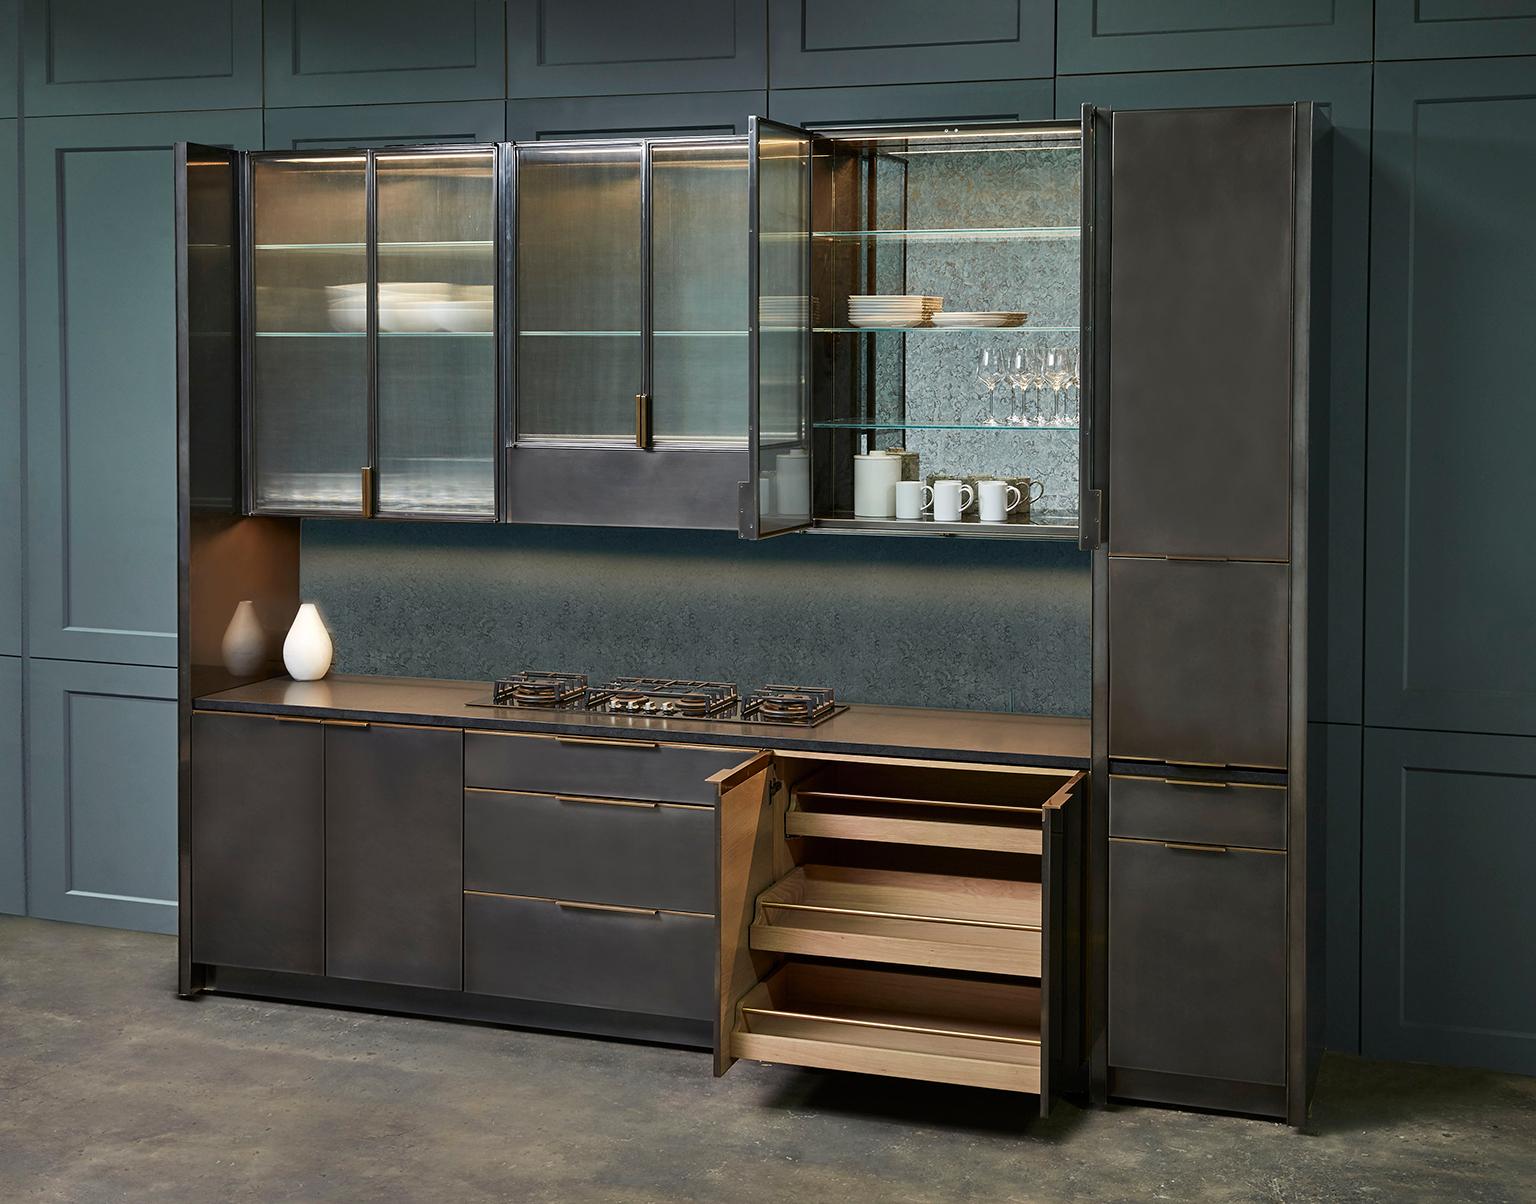 Die Küche in Rotguss von Amuneal ist ein vollständig maßgeschneidertes Küchensystem, das individuelle Funktionalität mit minimalistischen Details verbindet. Die Innenausstattungen werden aus Massivholz und handgeschnittenen Furnieren hergestellt,